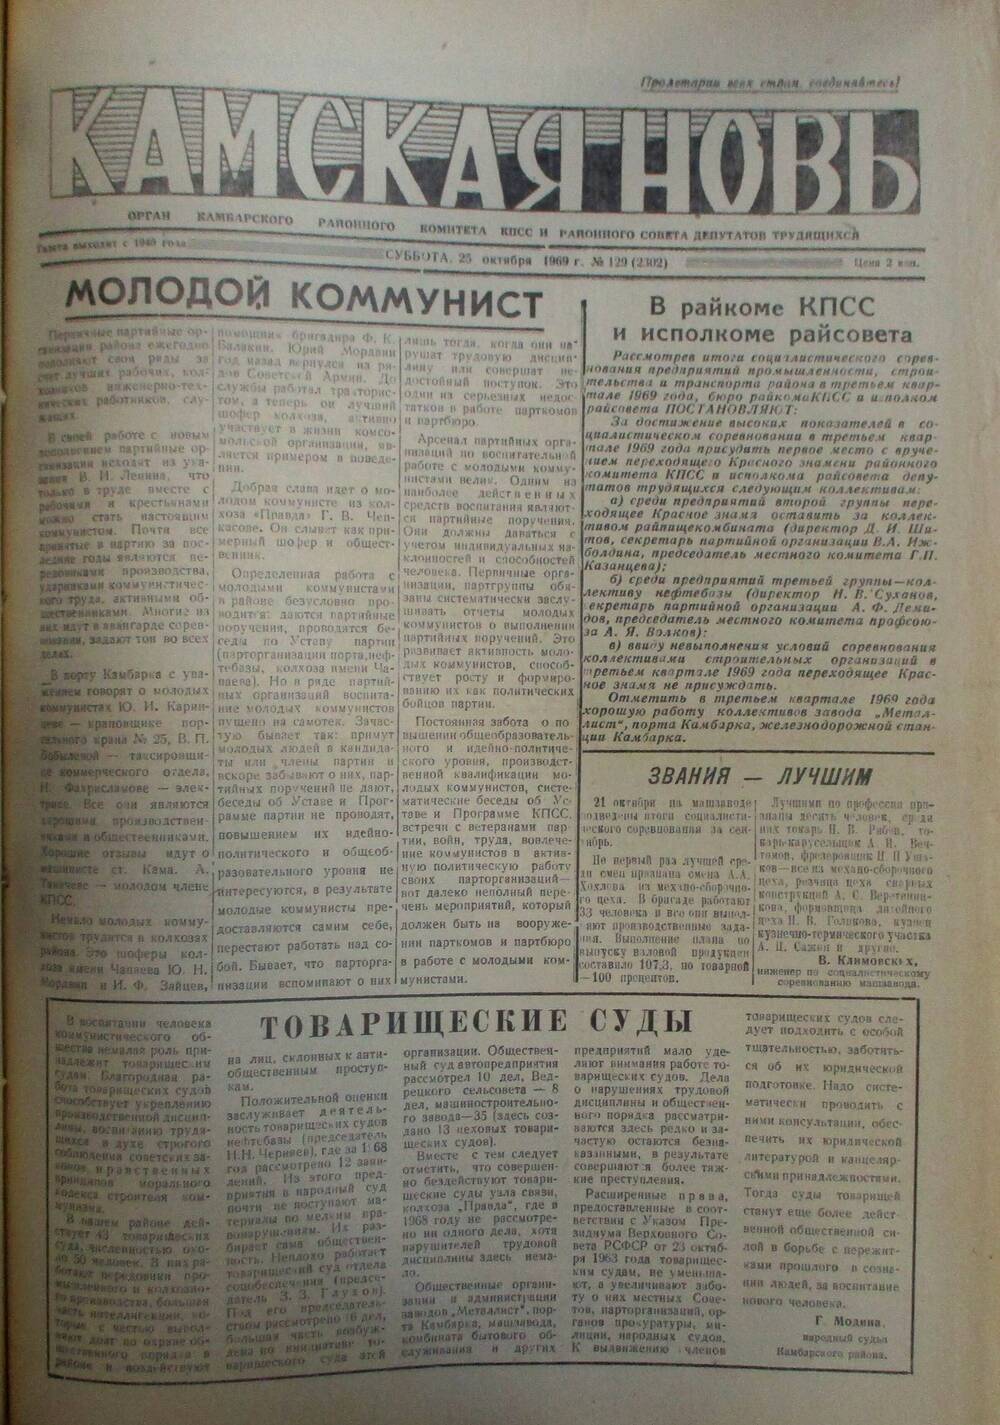 Газеты Камская новь за 1969 год, орган Камбарского райсовета и  РККПСС, с №1 по №66, с №68 по №156. №129.